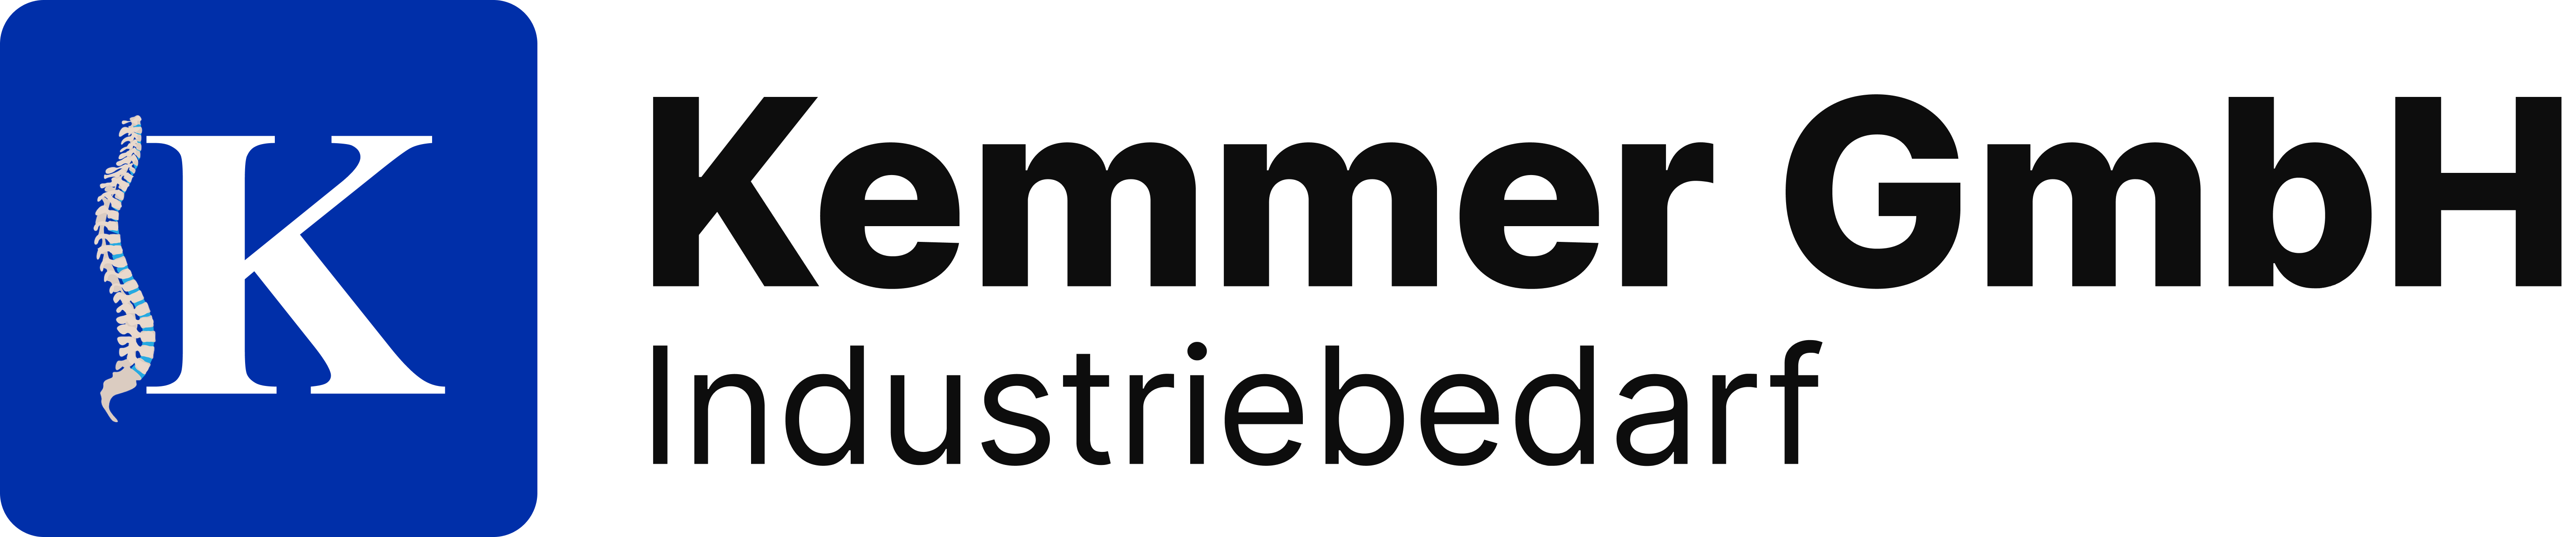 Kemmer GmbH - Hersteller von ergonomischen Bodenbelägen in DE